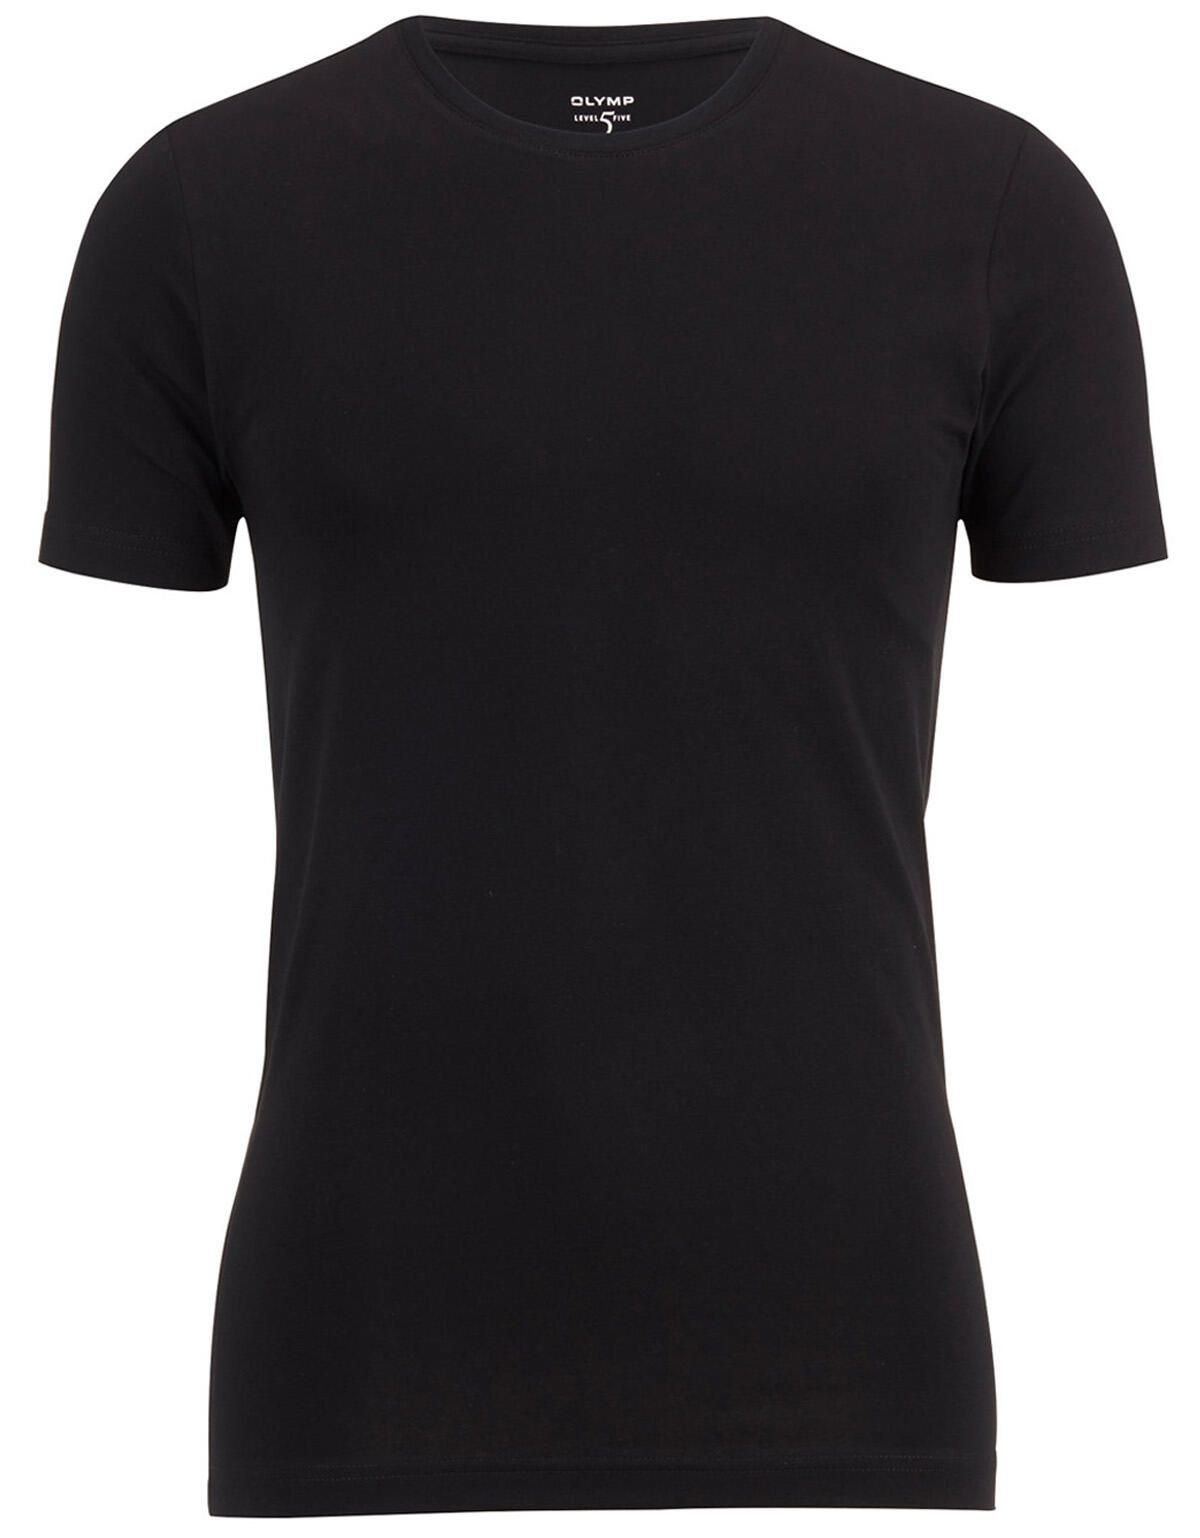 Чёрная бельевая футболка OLYMP приталенная